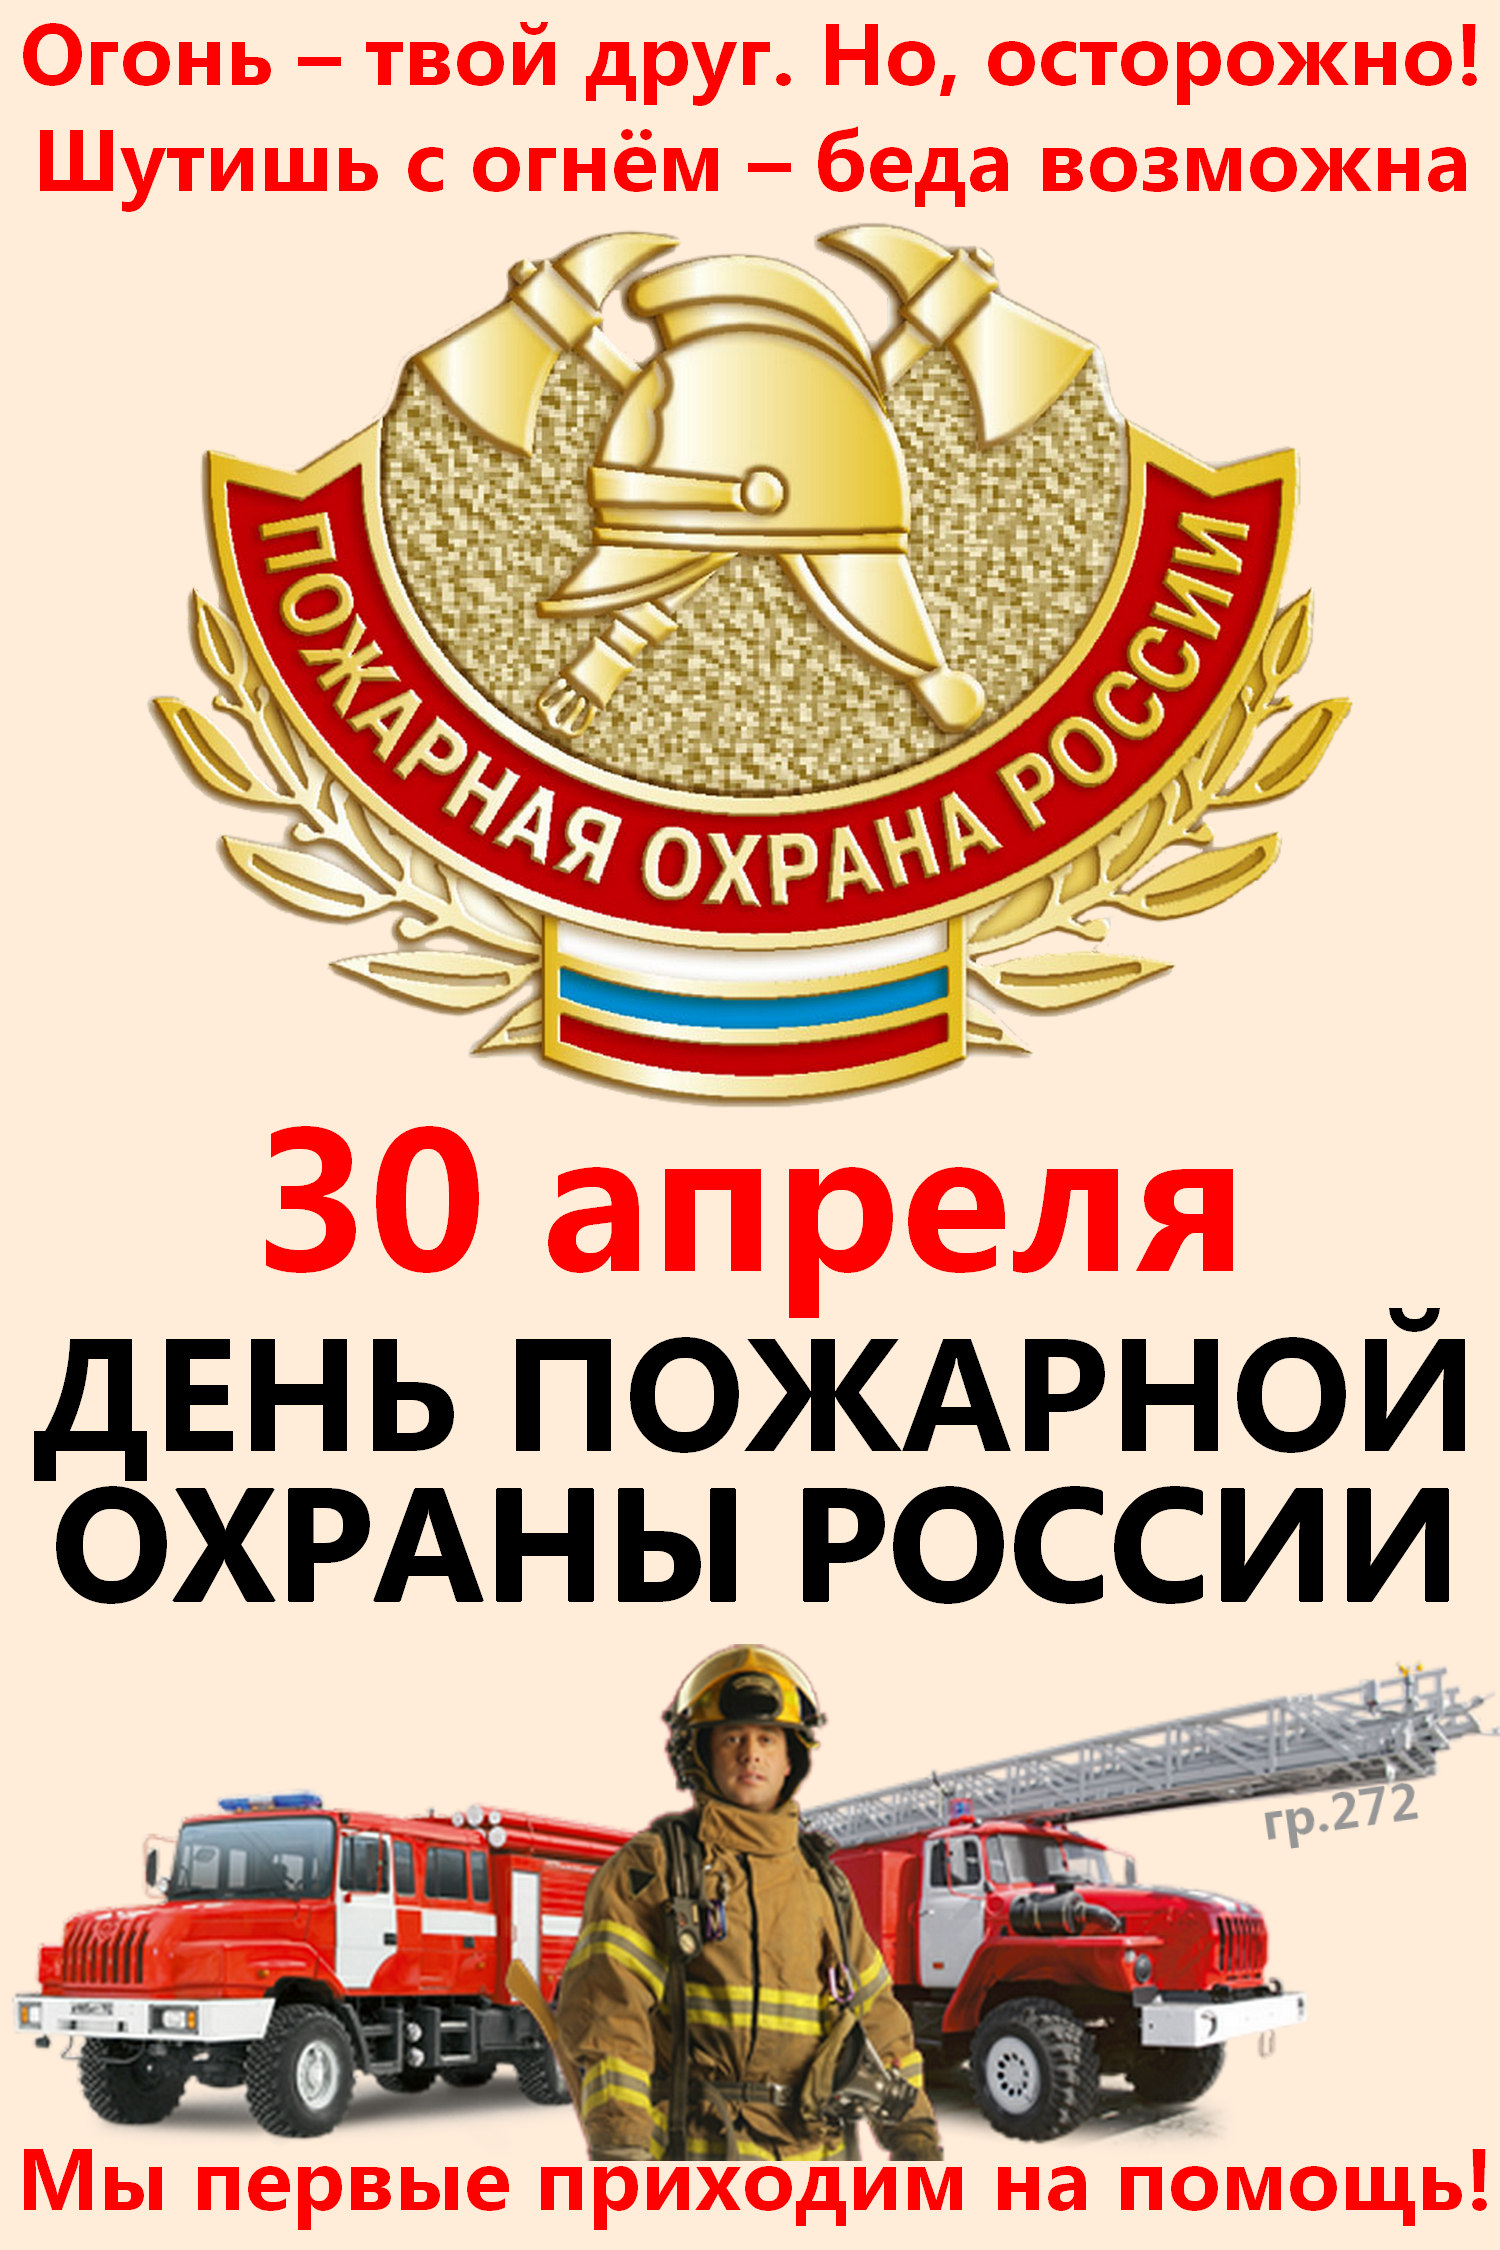 Какой праздник будет 30 апреля. 30 Апреля день пожарной охраны России. С днем пожарной охраны 30 апреля. С днем пожарной охраны поздравление. Поздравление с днем пожарного.